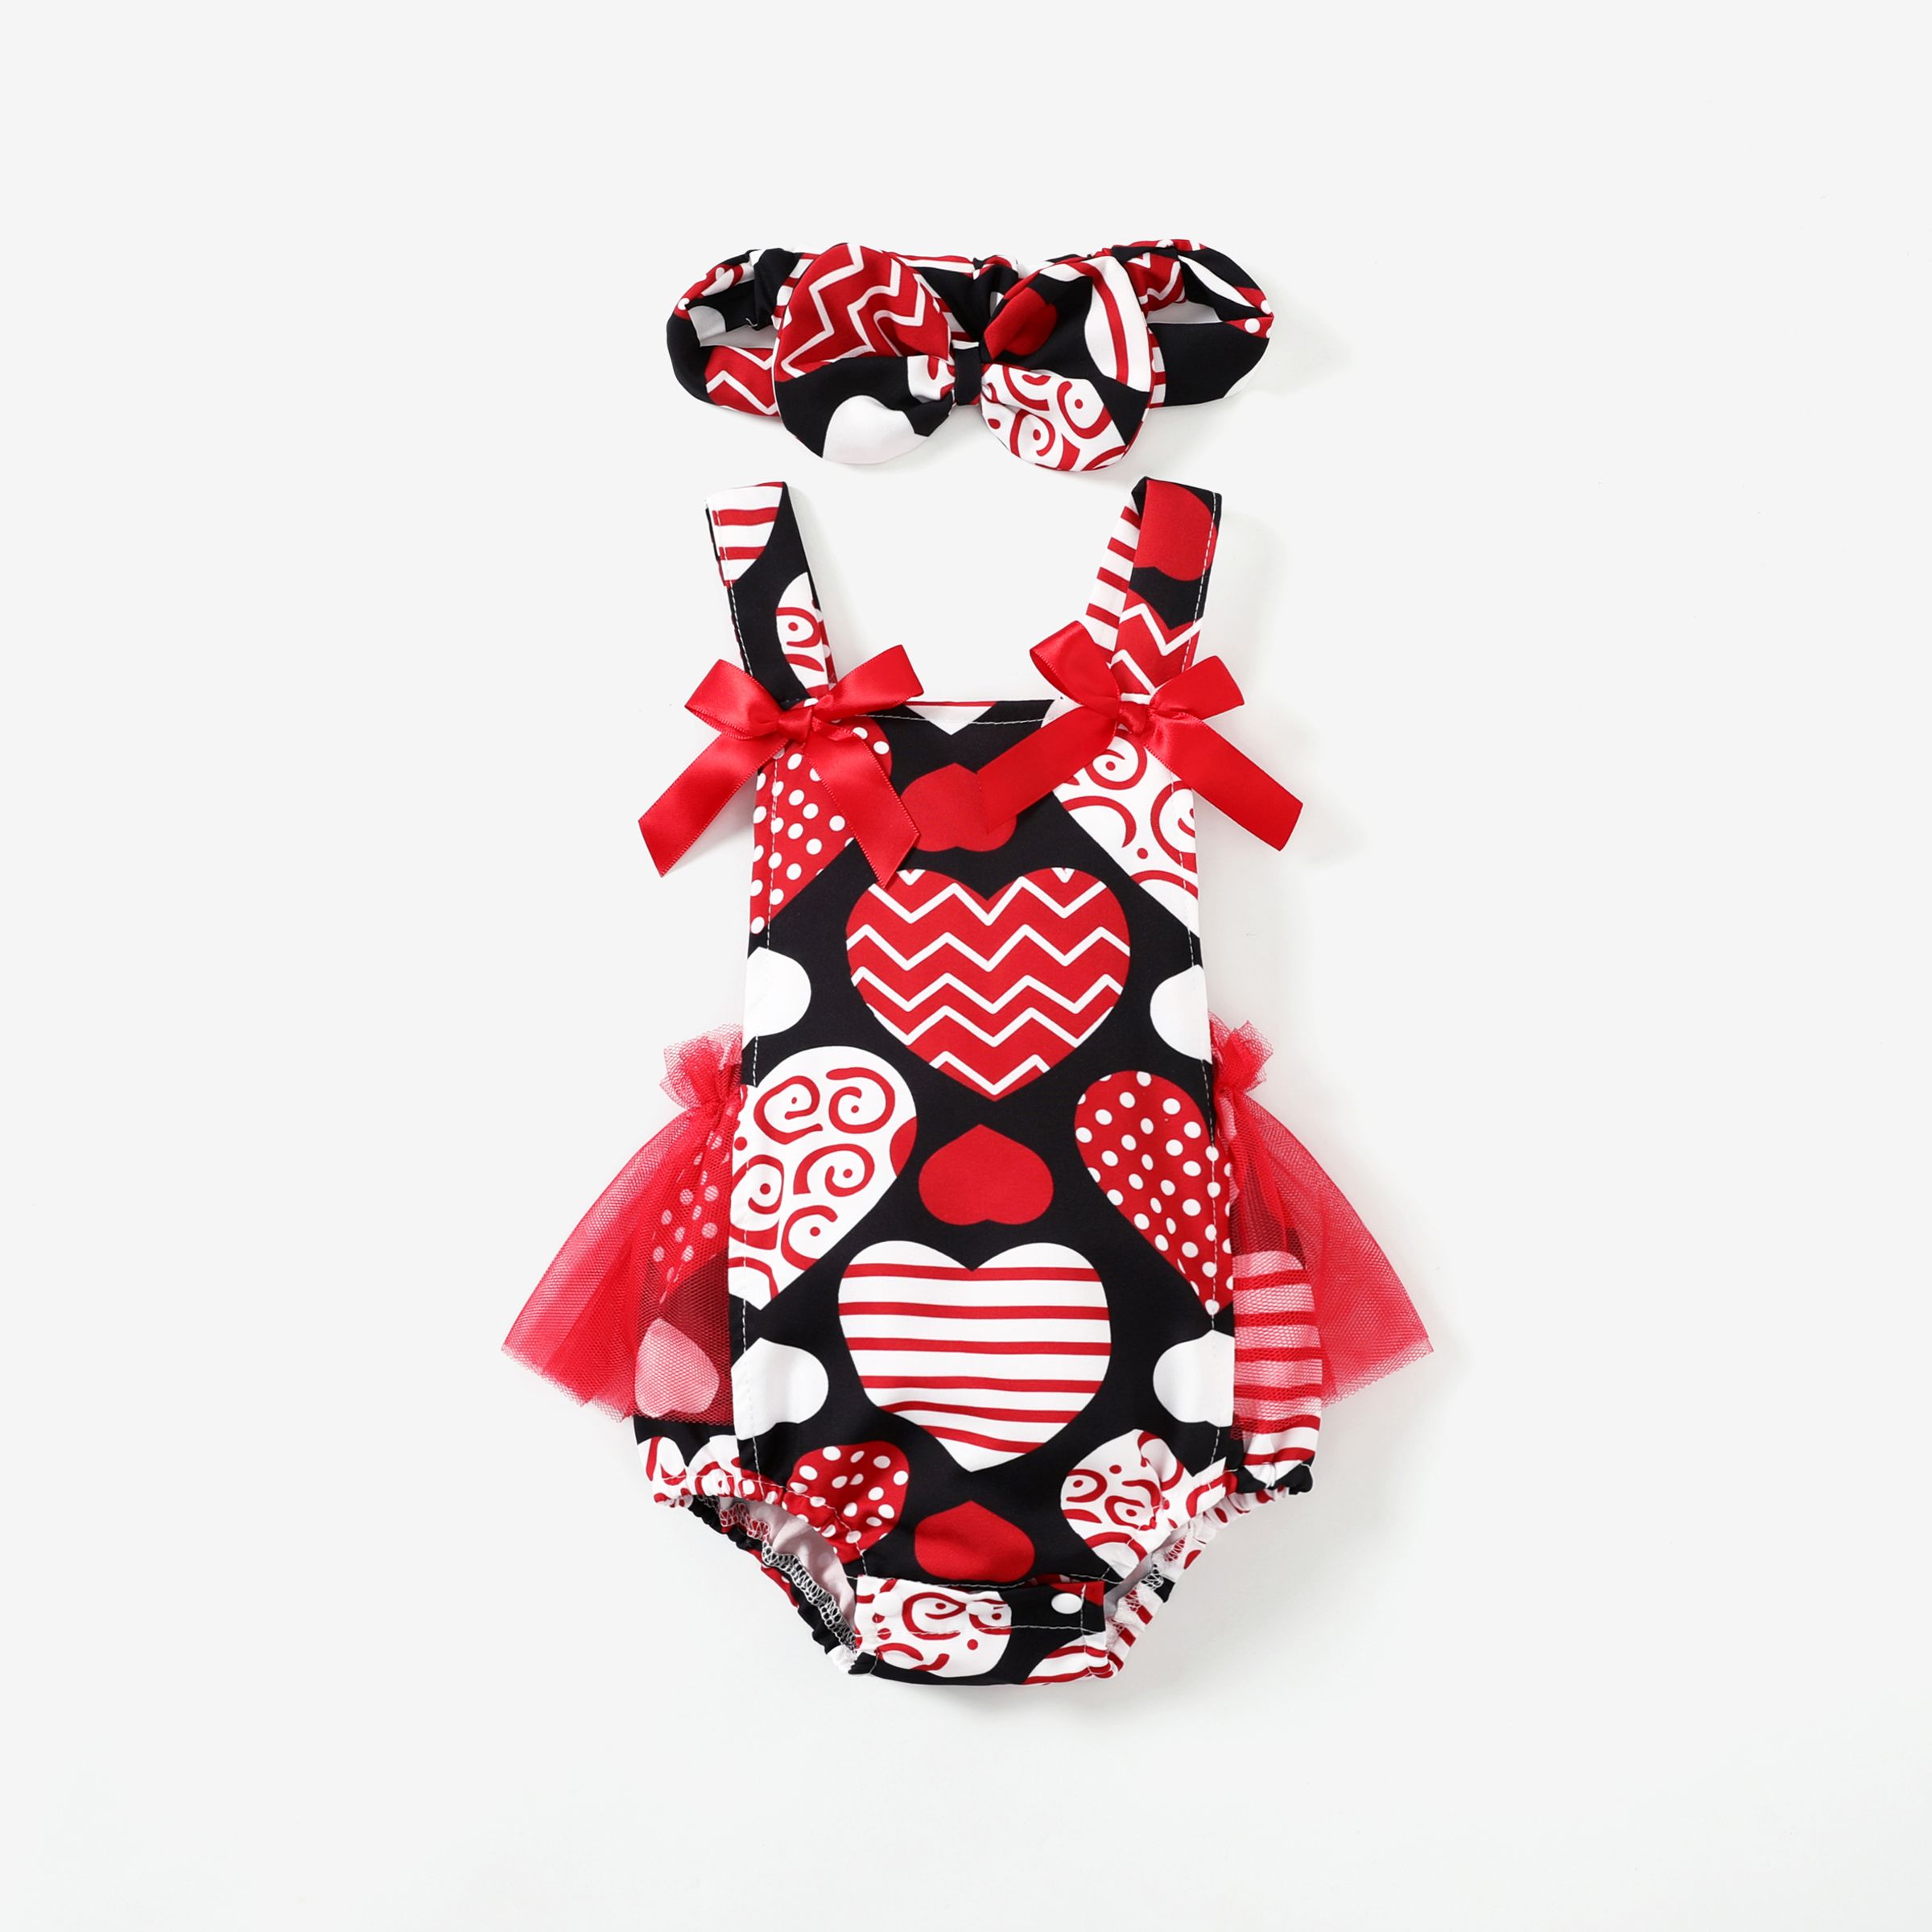 2pcs Baby Girls Valentine's Day Pink Heart Ruffle Edge Mesh Overalls And Headband Set